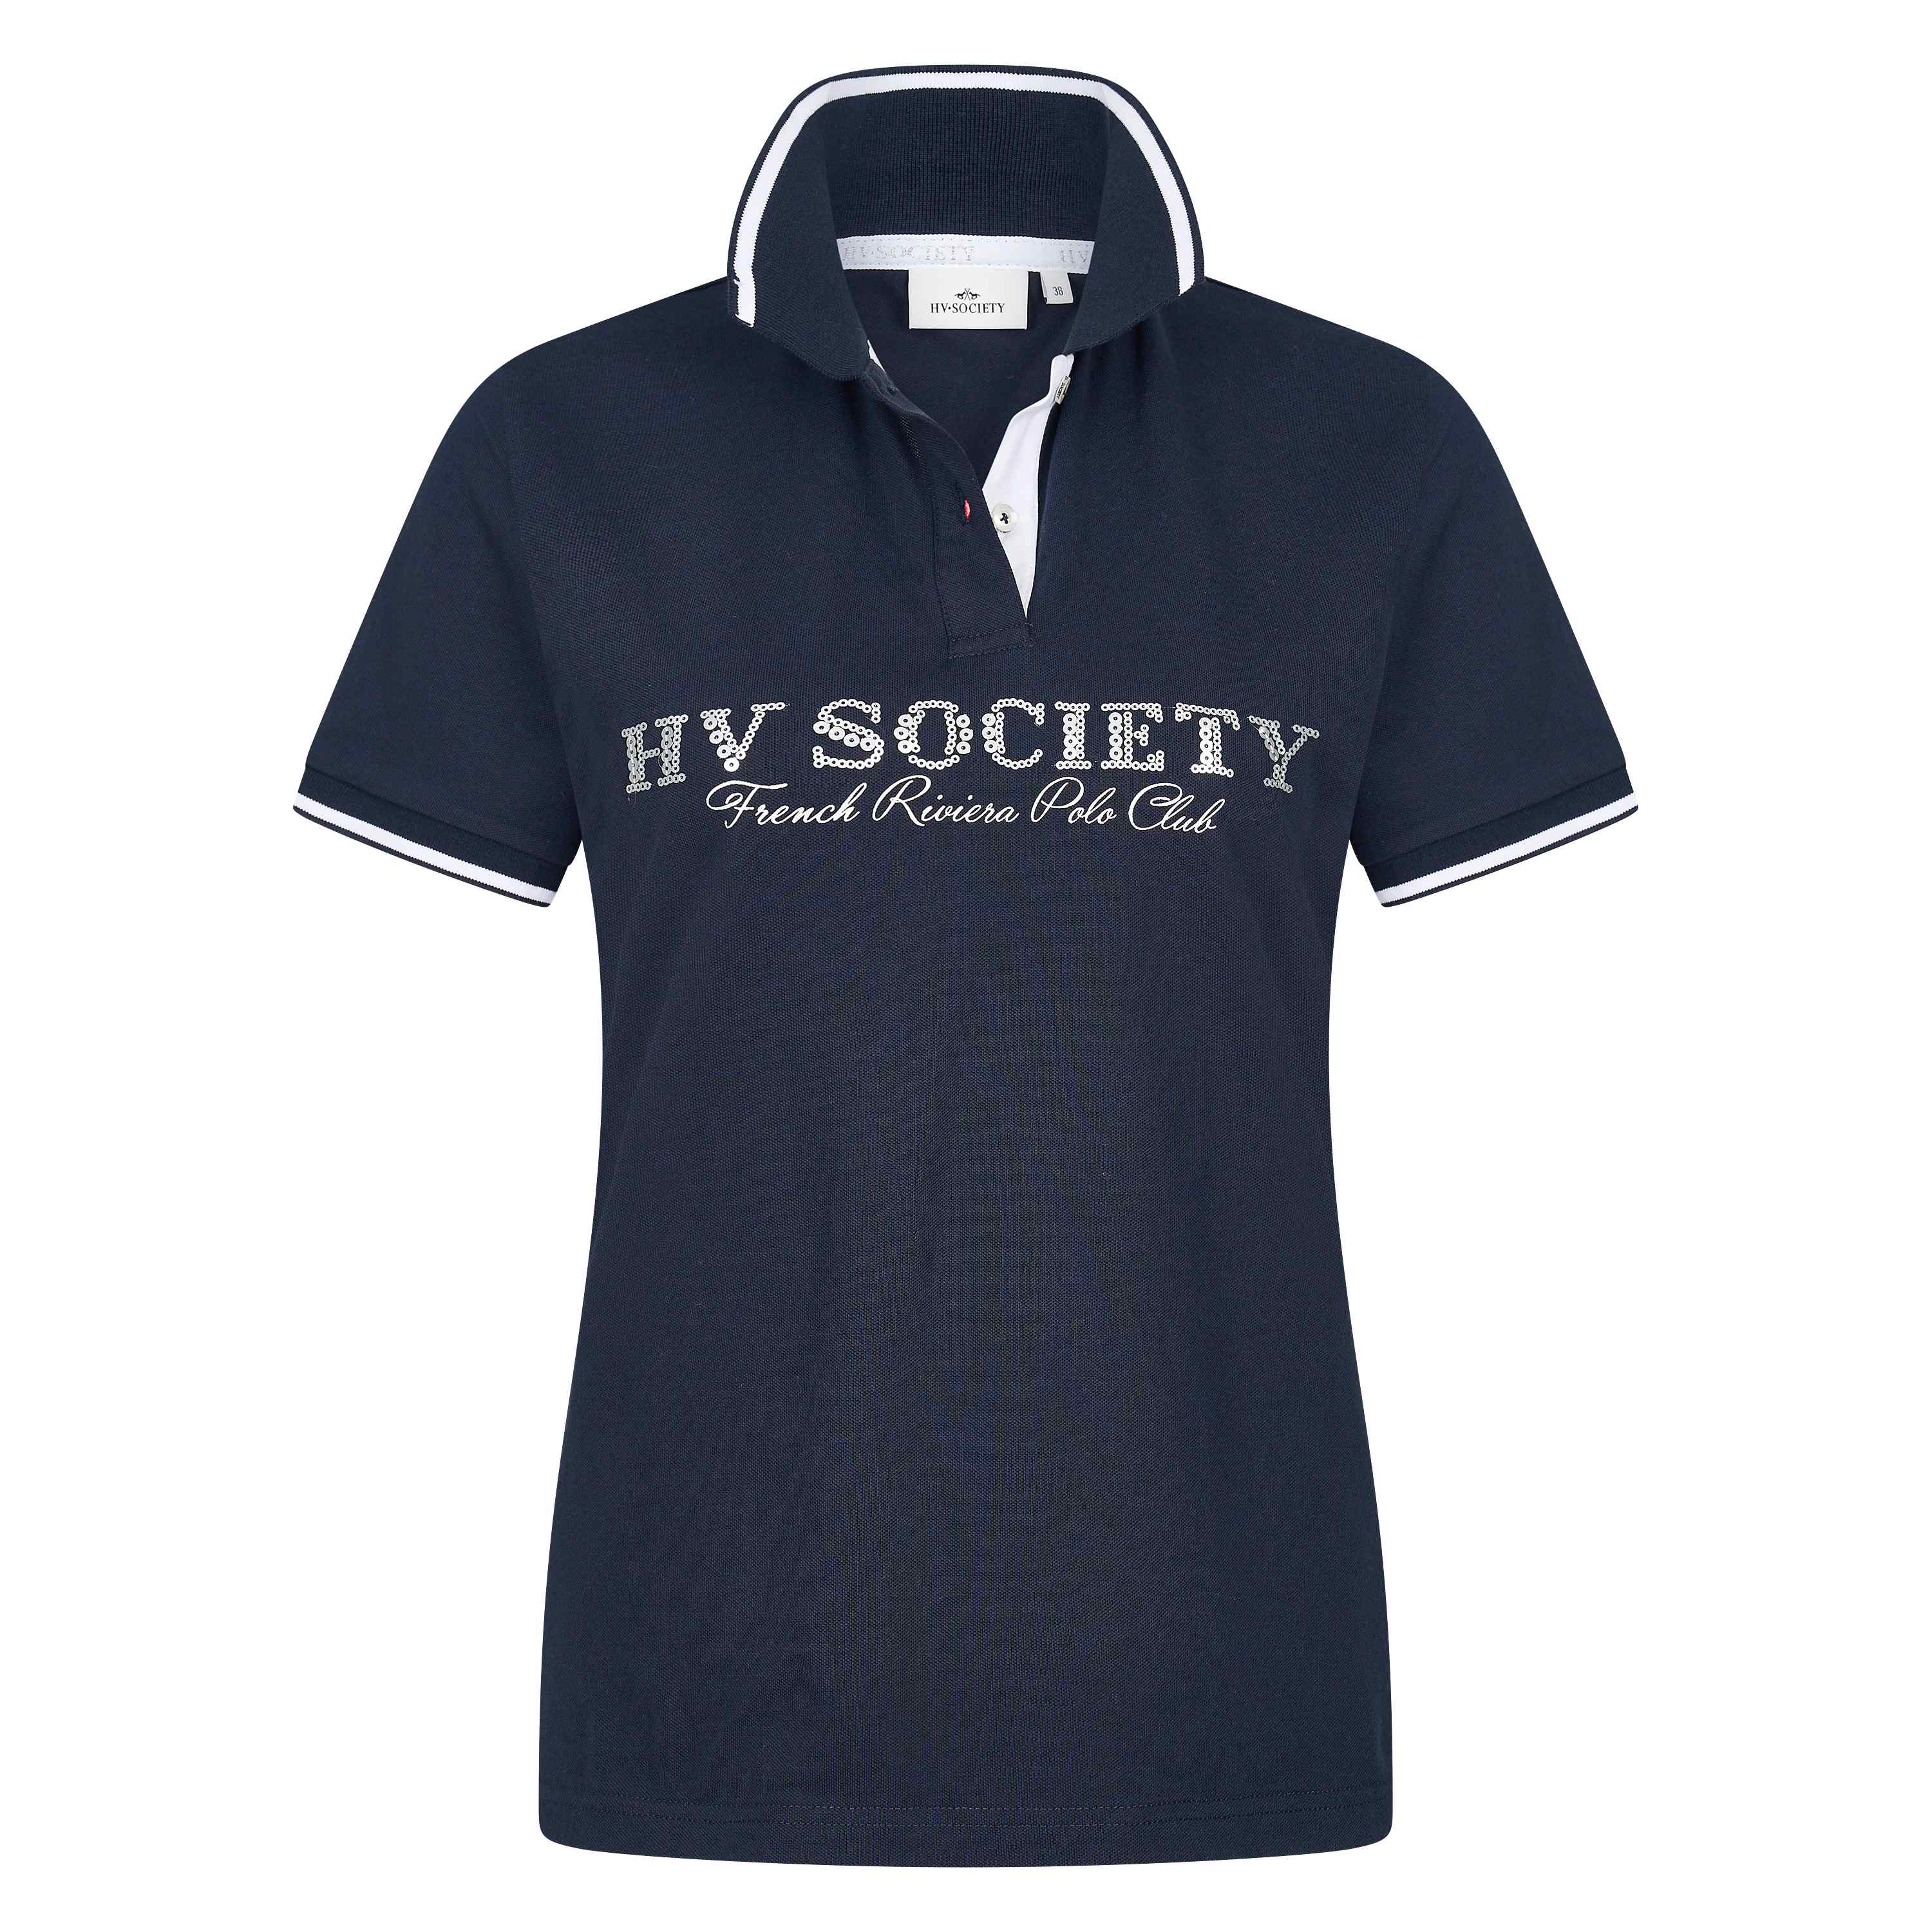 Afbeelding van HV Society Poloshirt hvsaxelle